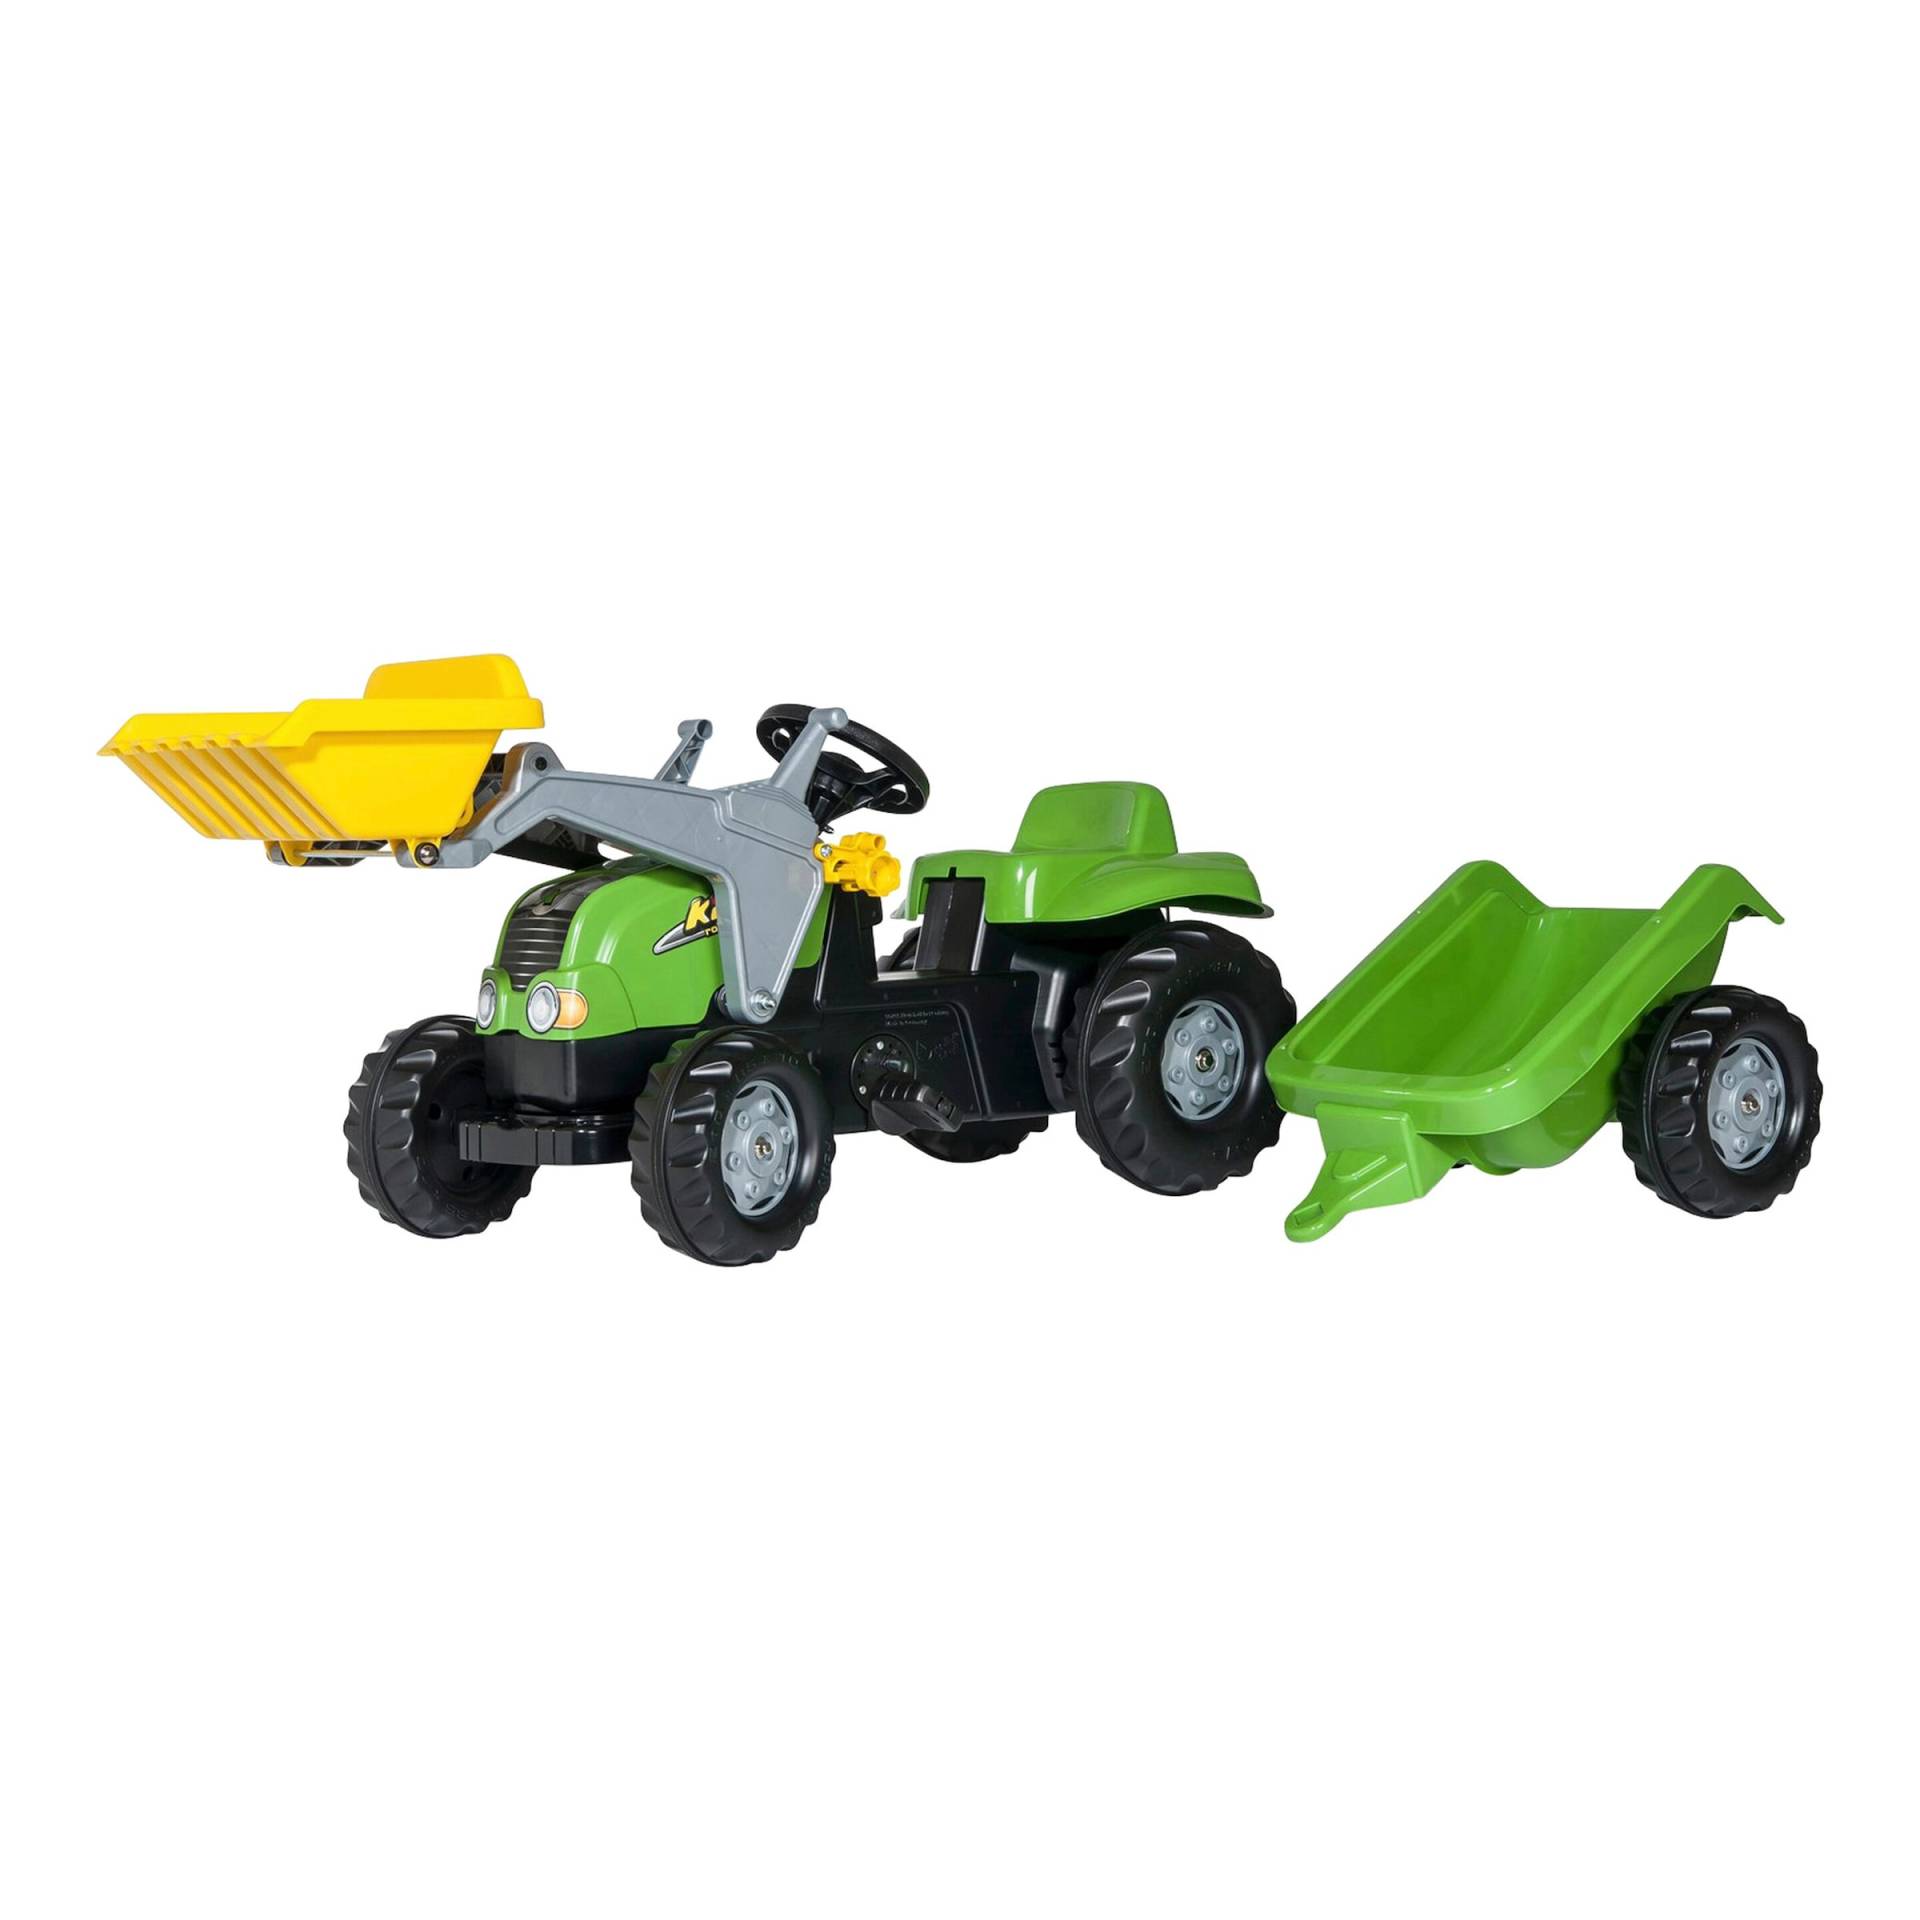 Rolly Toys® Trettraktor rollyKid-X mit Frontlader und Anhänger von rolly toys